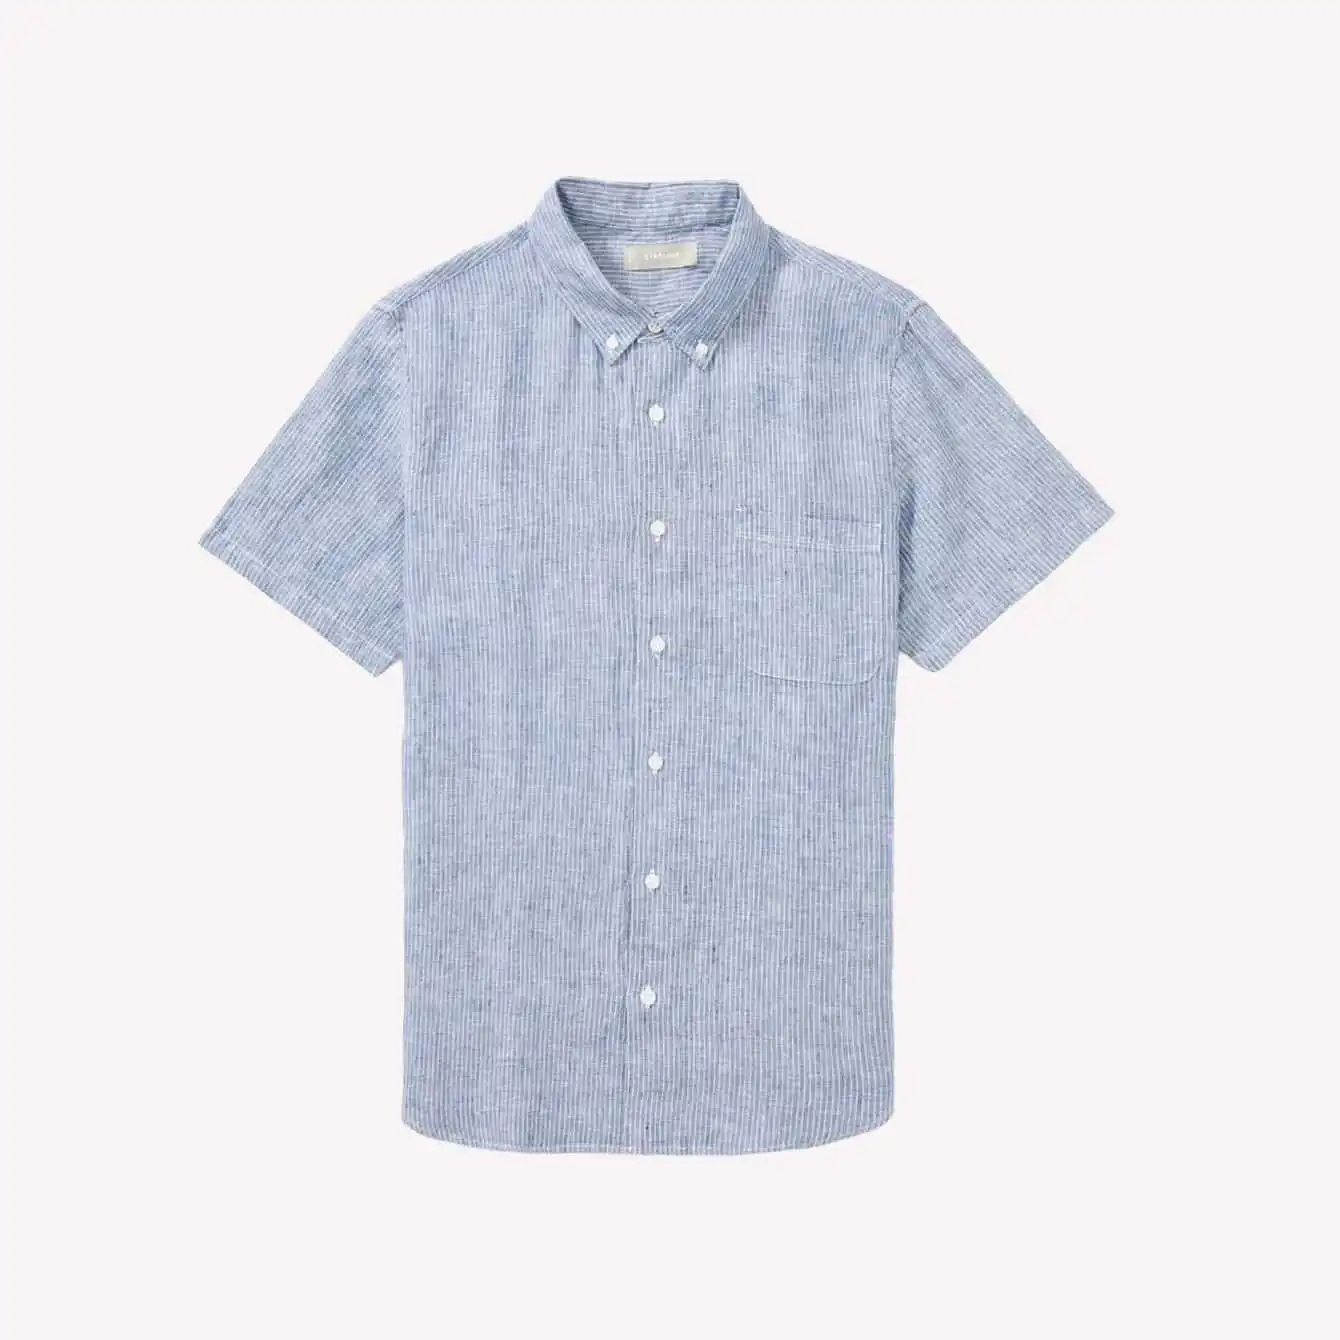 Everlane - The Linen Short-Sleeve Standard Fit Shirt